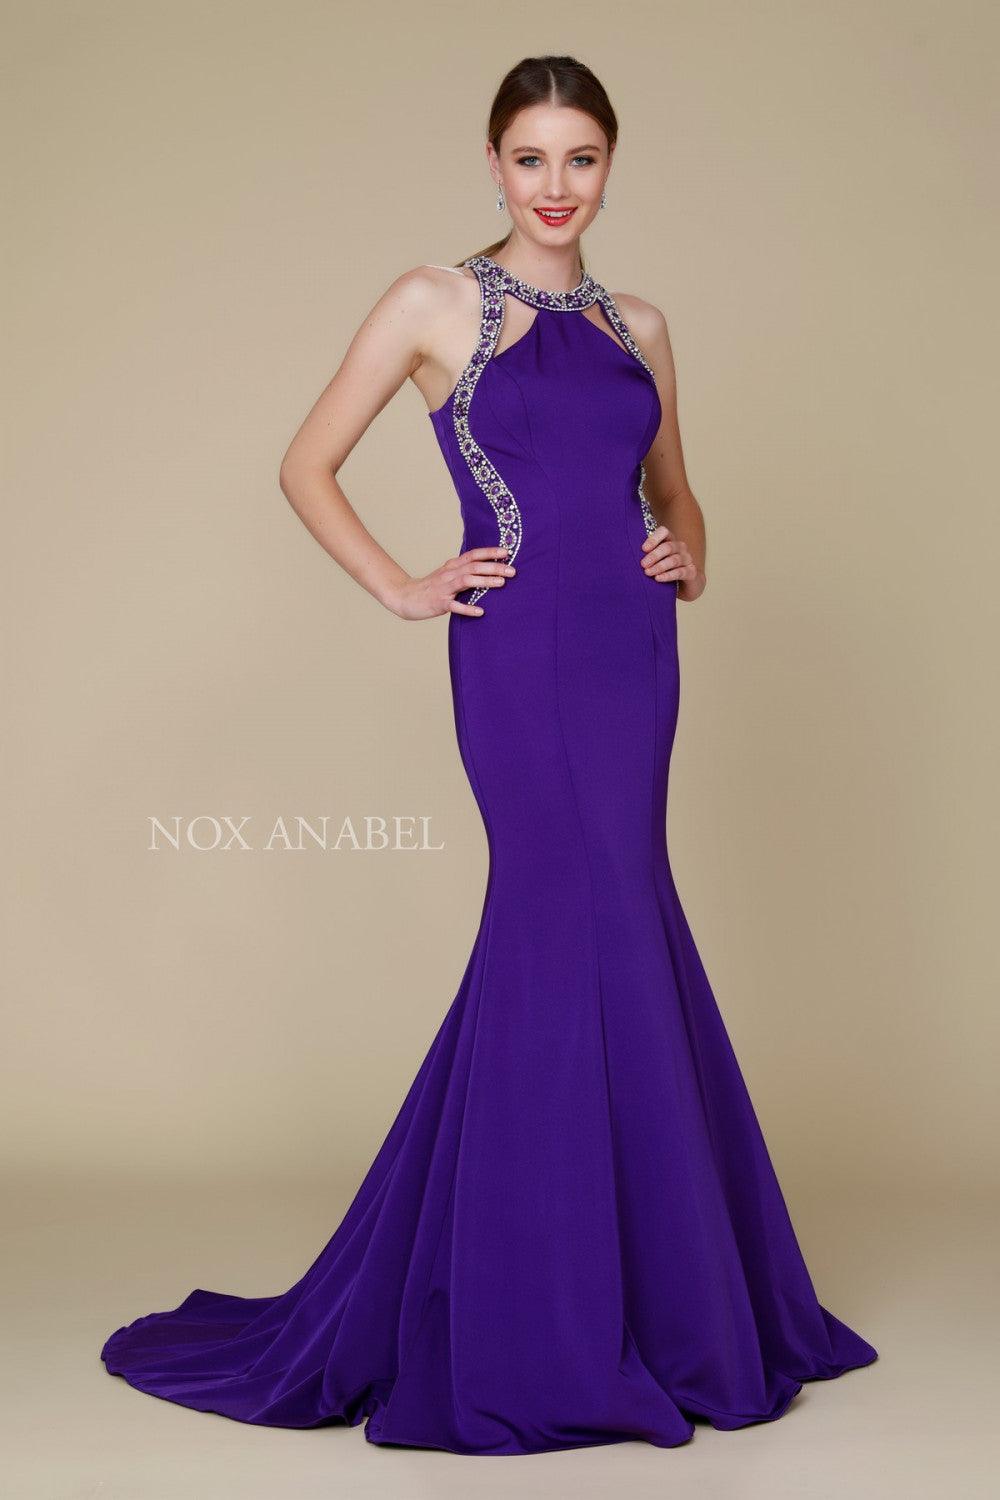 Long Halter Neck Embellished Formal Evening Dress - The Dress Outlet Nox Anabel